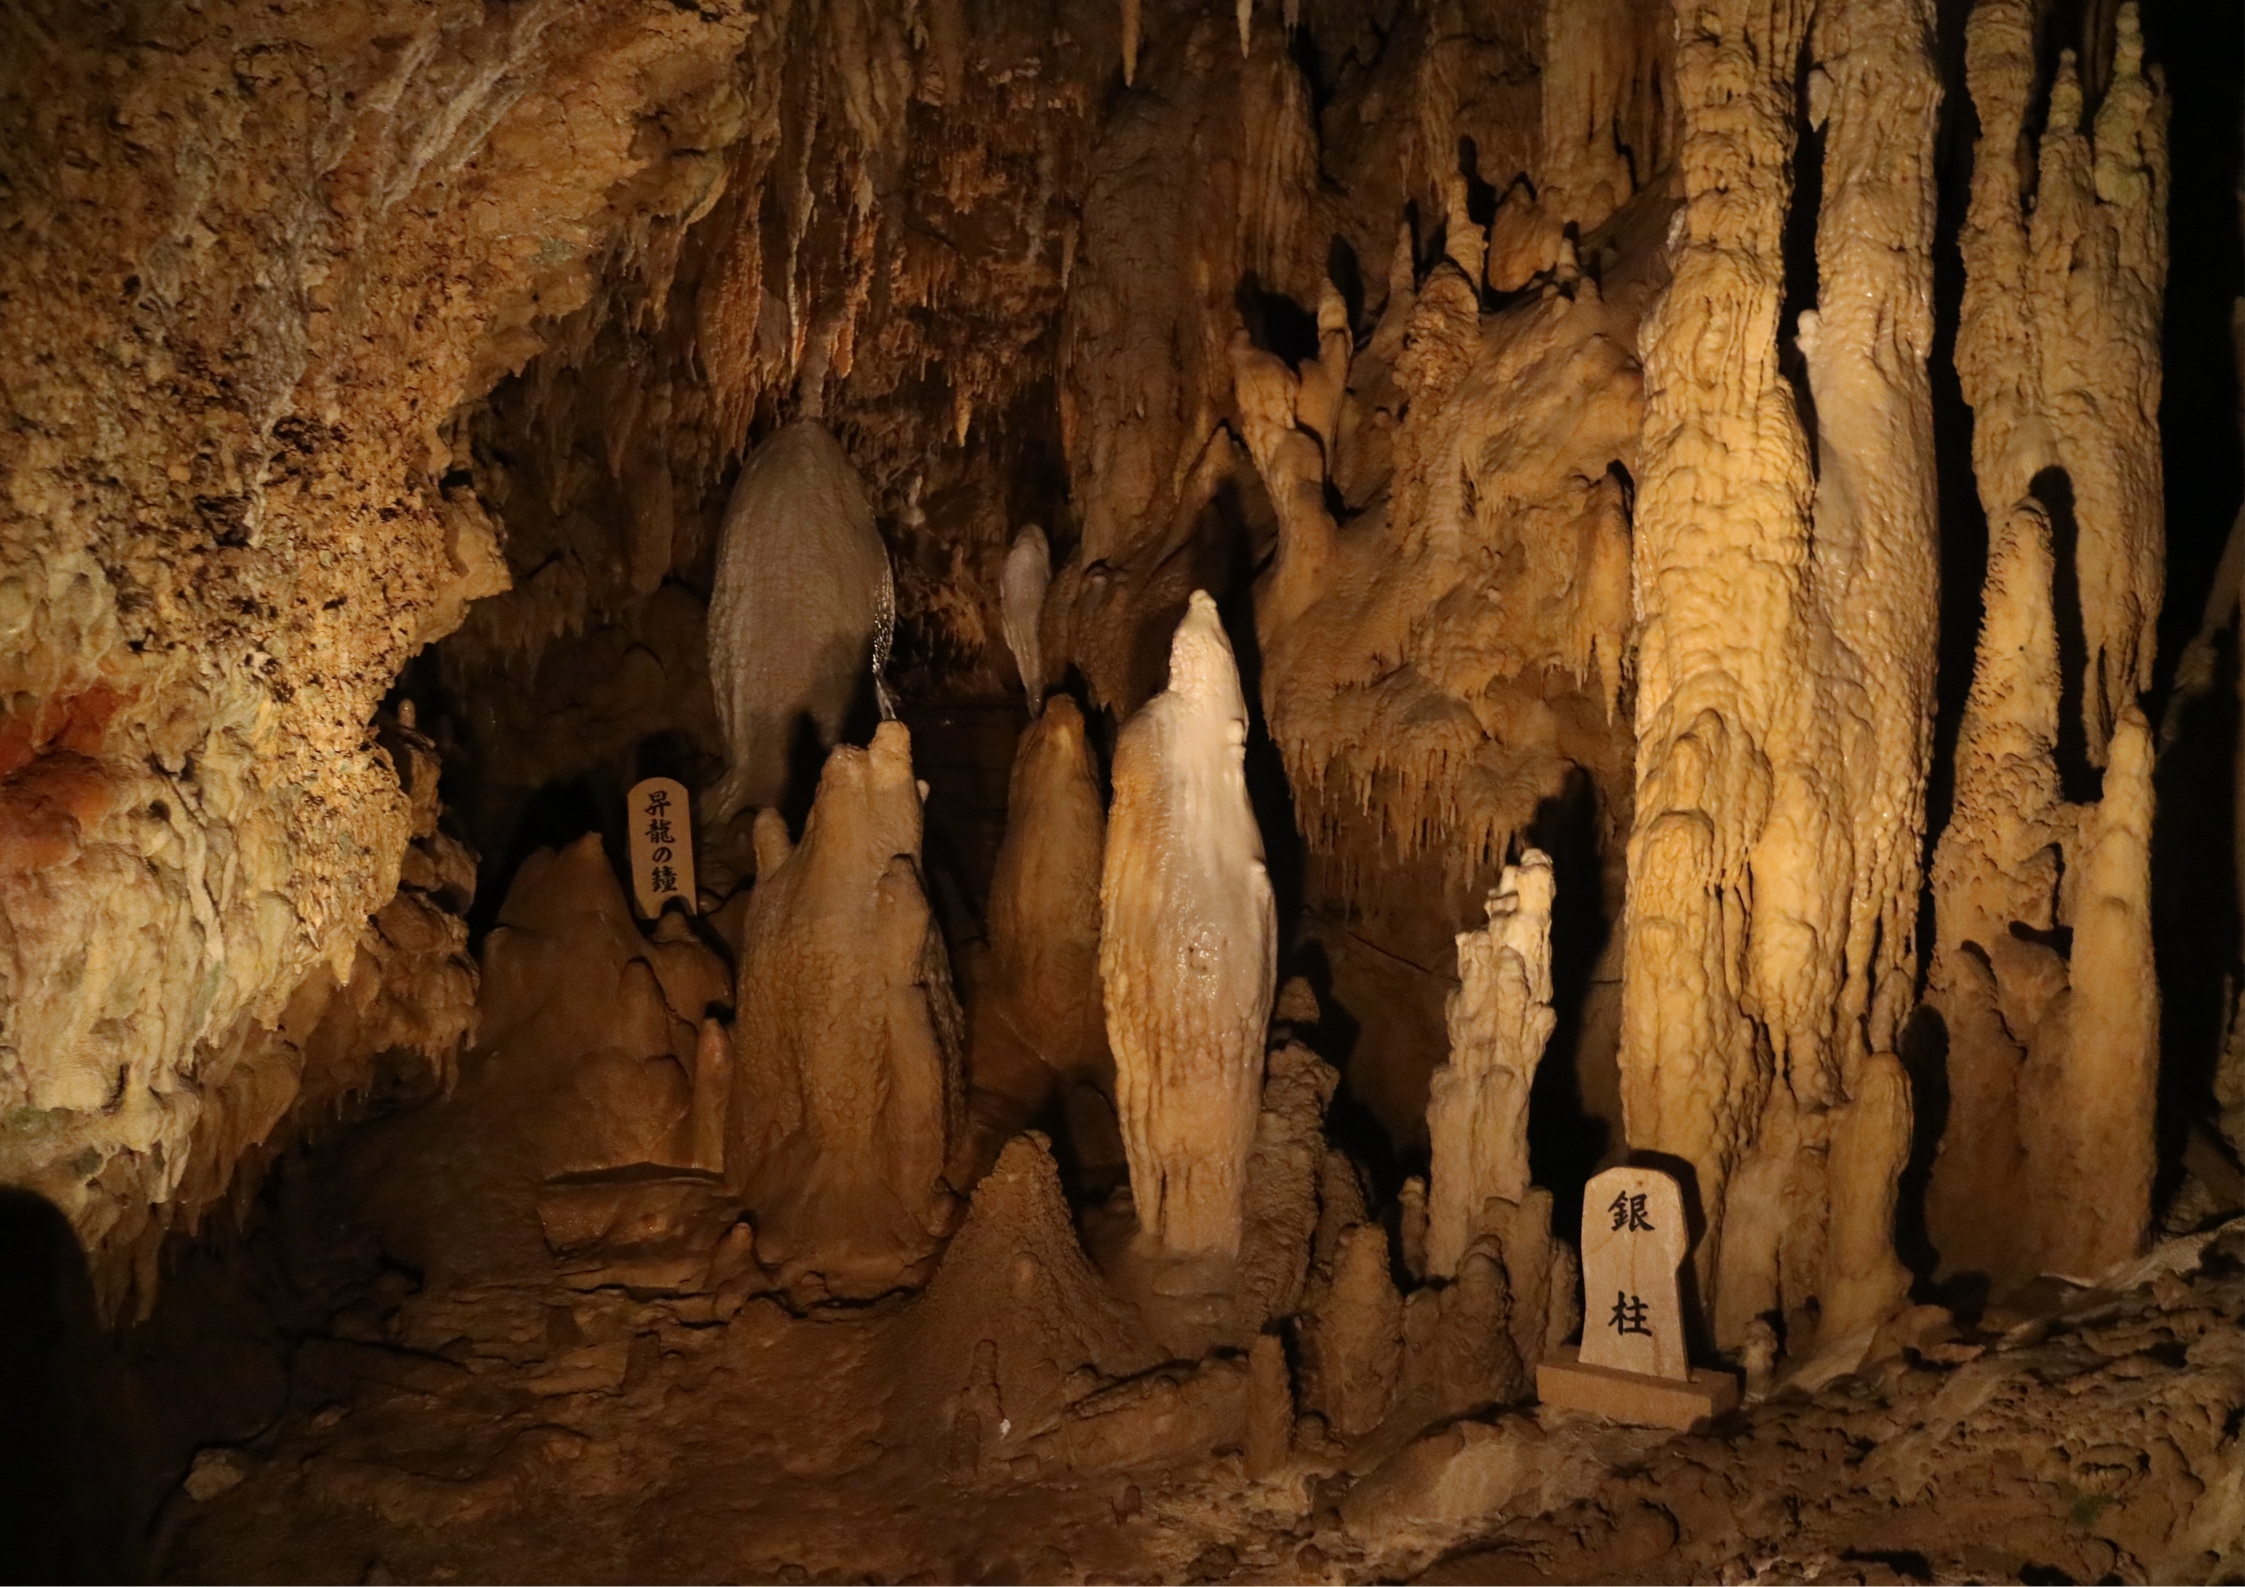 Gyokusendo cave at Okinawa world